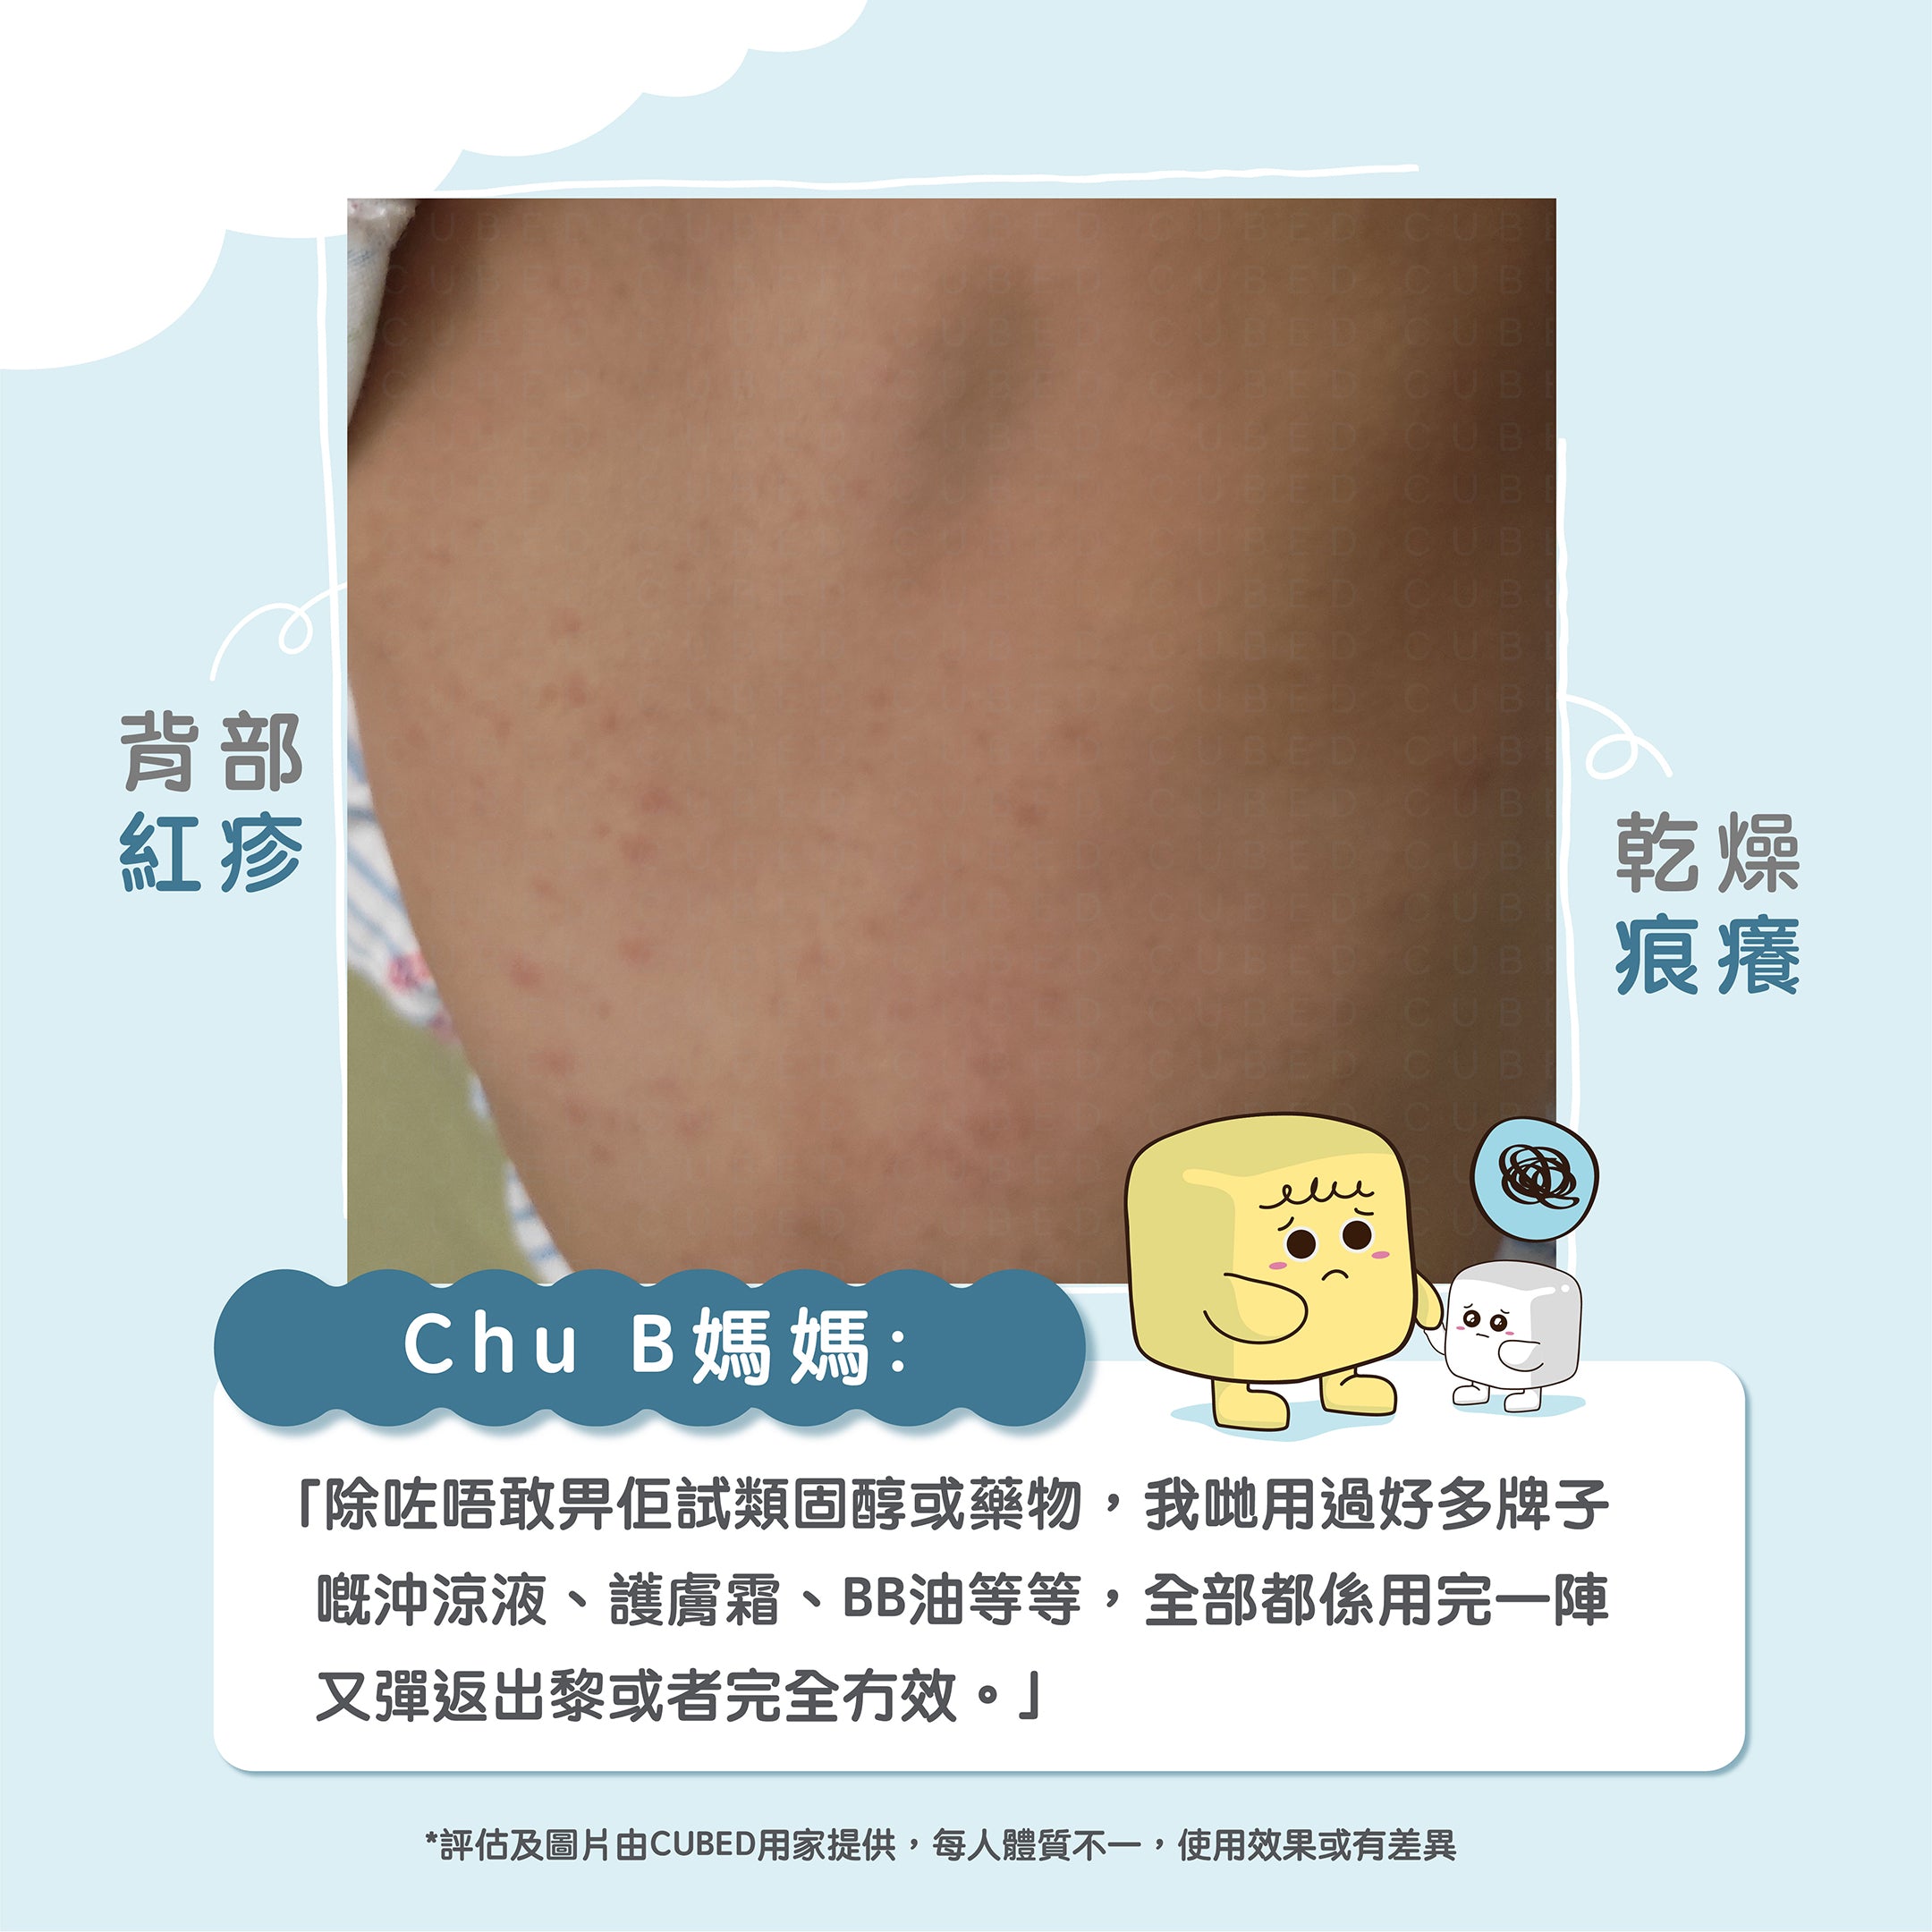 兒童濕疹肌於背部出現紅疹痕癢等徵狀